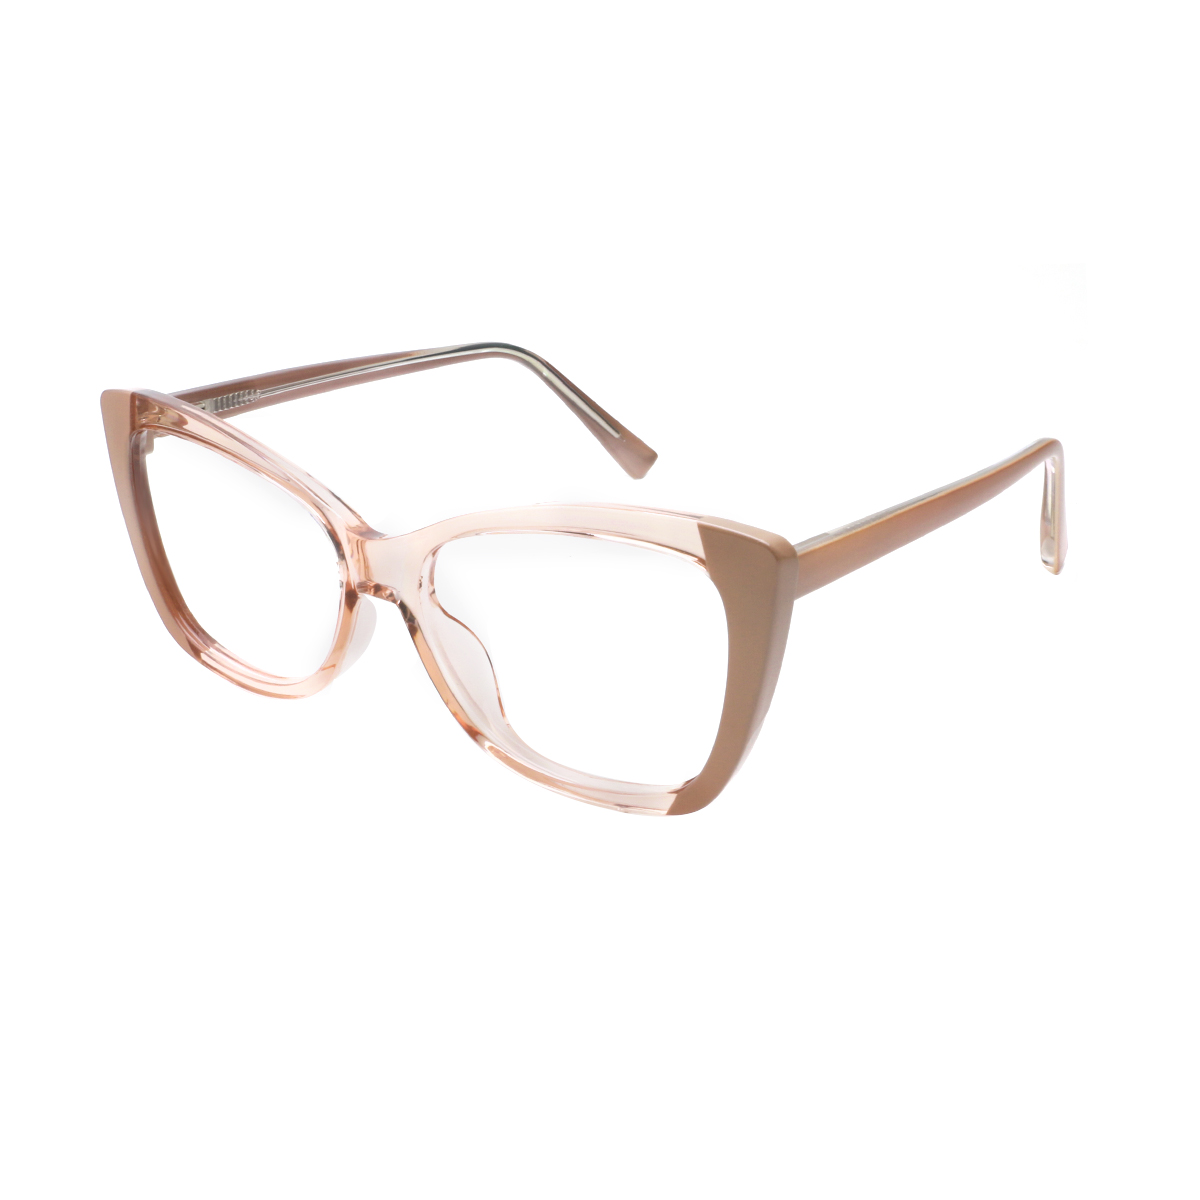 Pythia - Cat-eye Brown Reading Glasses for Women